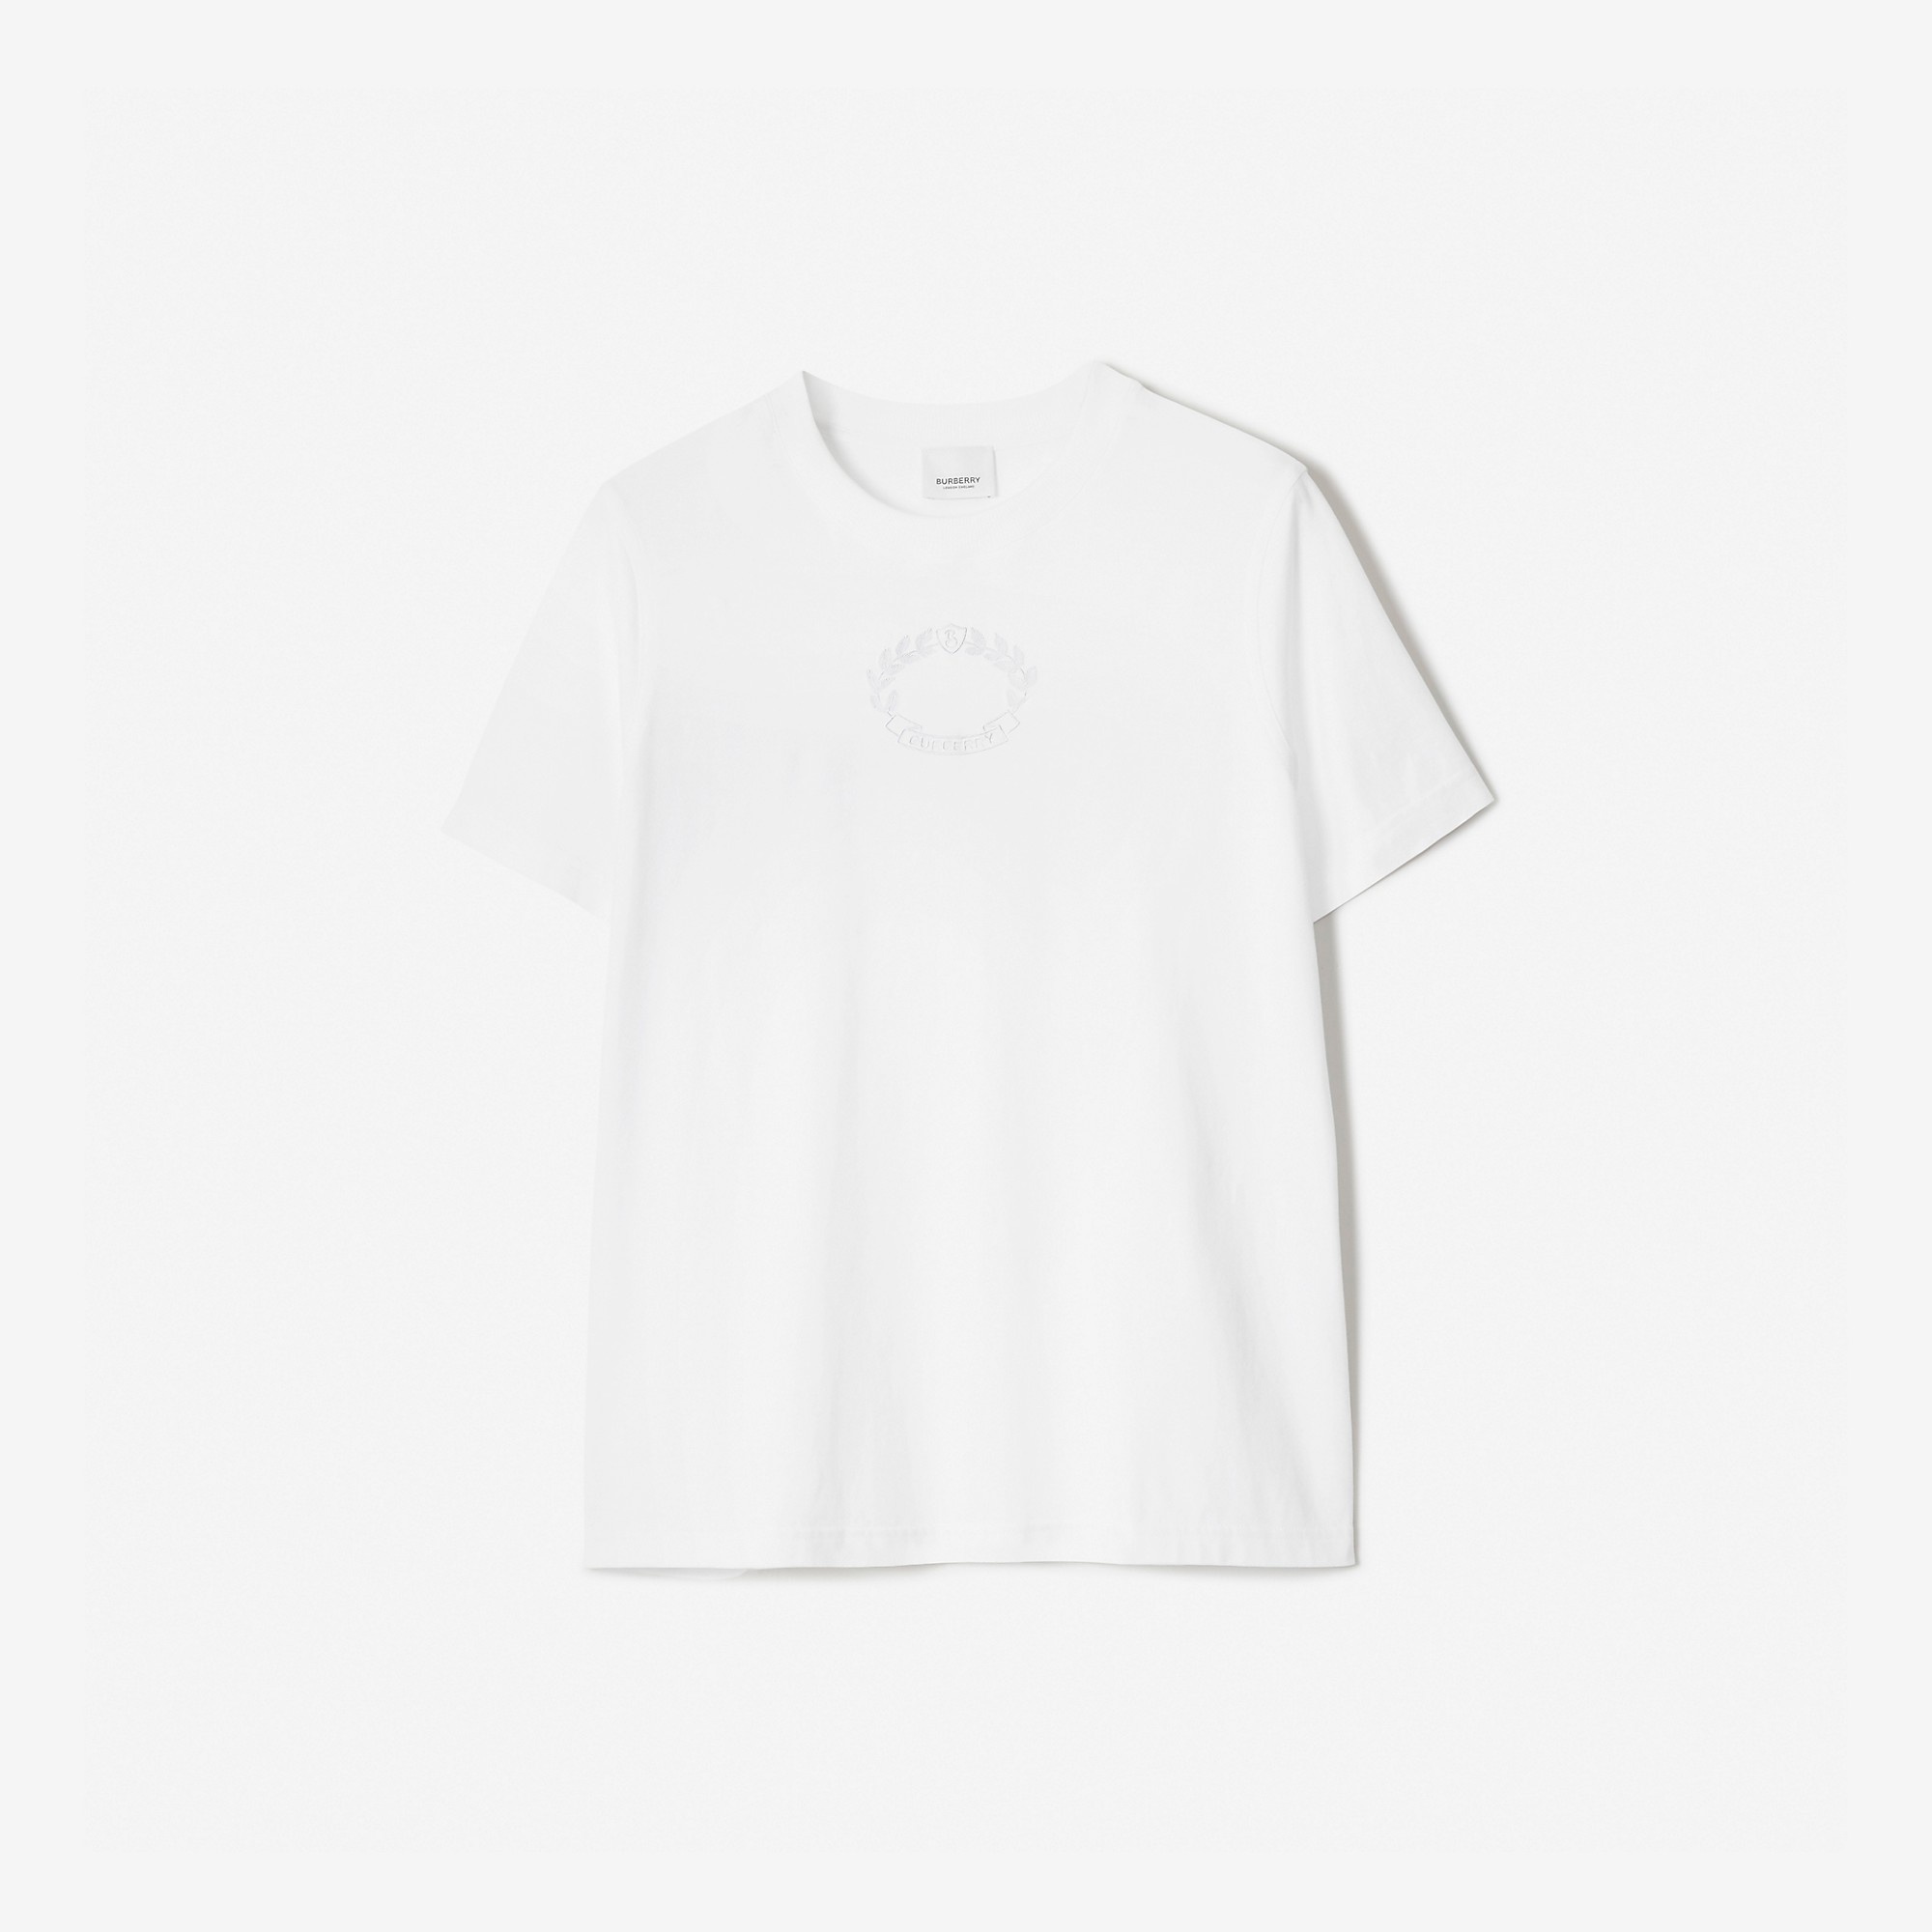 Embroidered Oak Leaf Crest Cotton T-shirt - 1